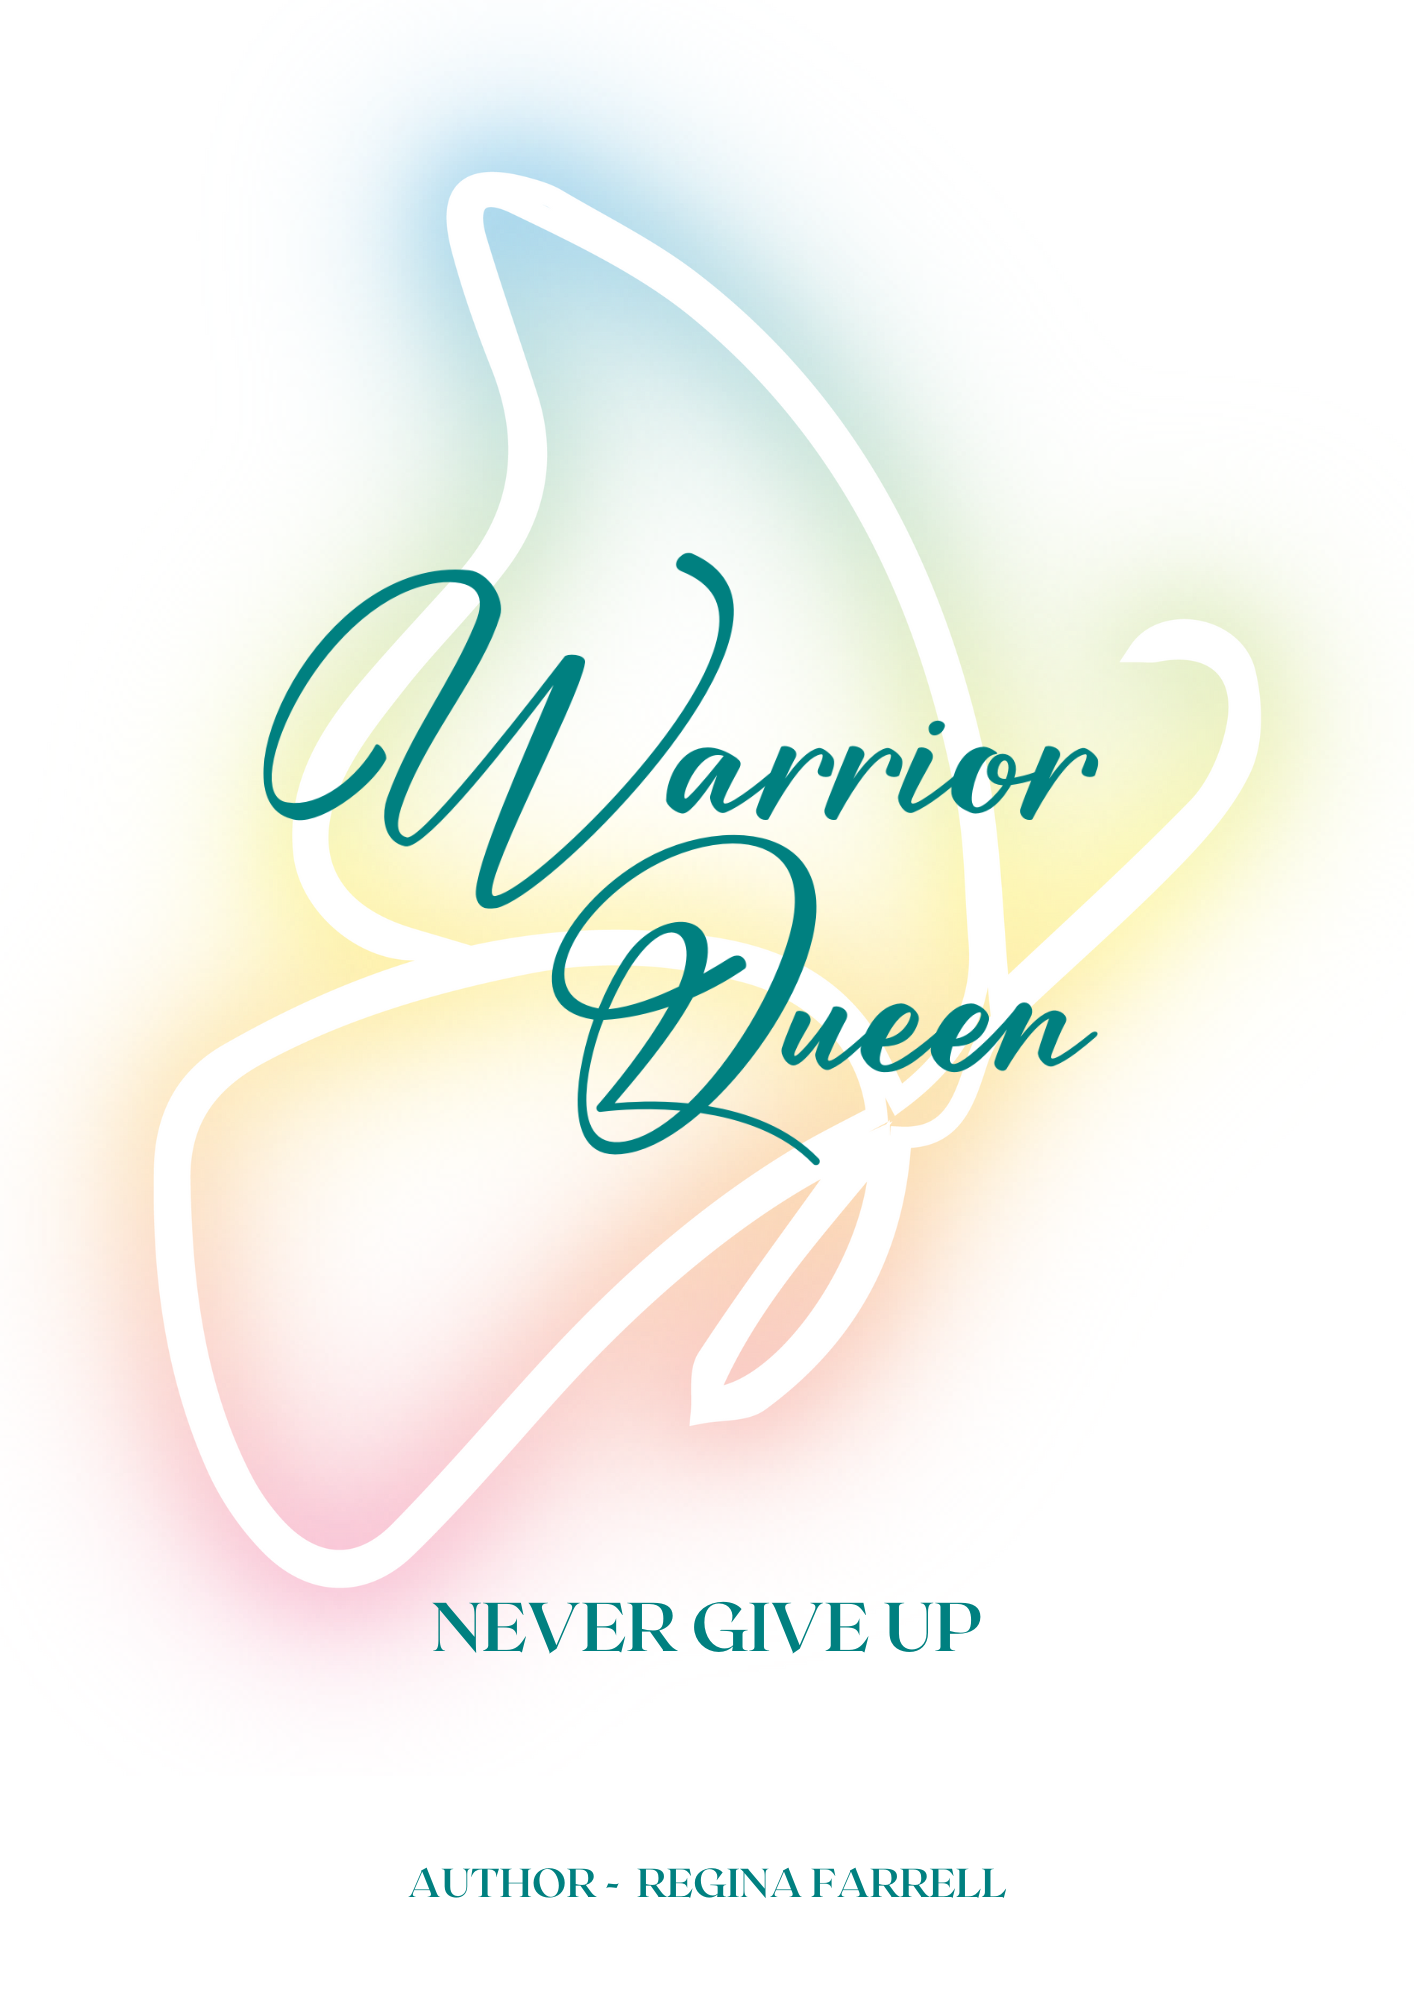 Warrior Queen - A book by Regina Farrell